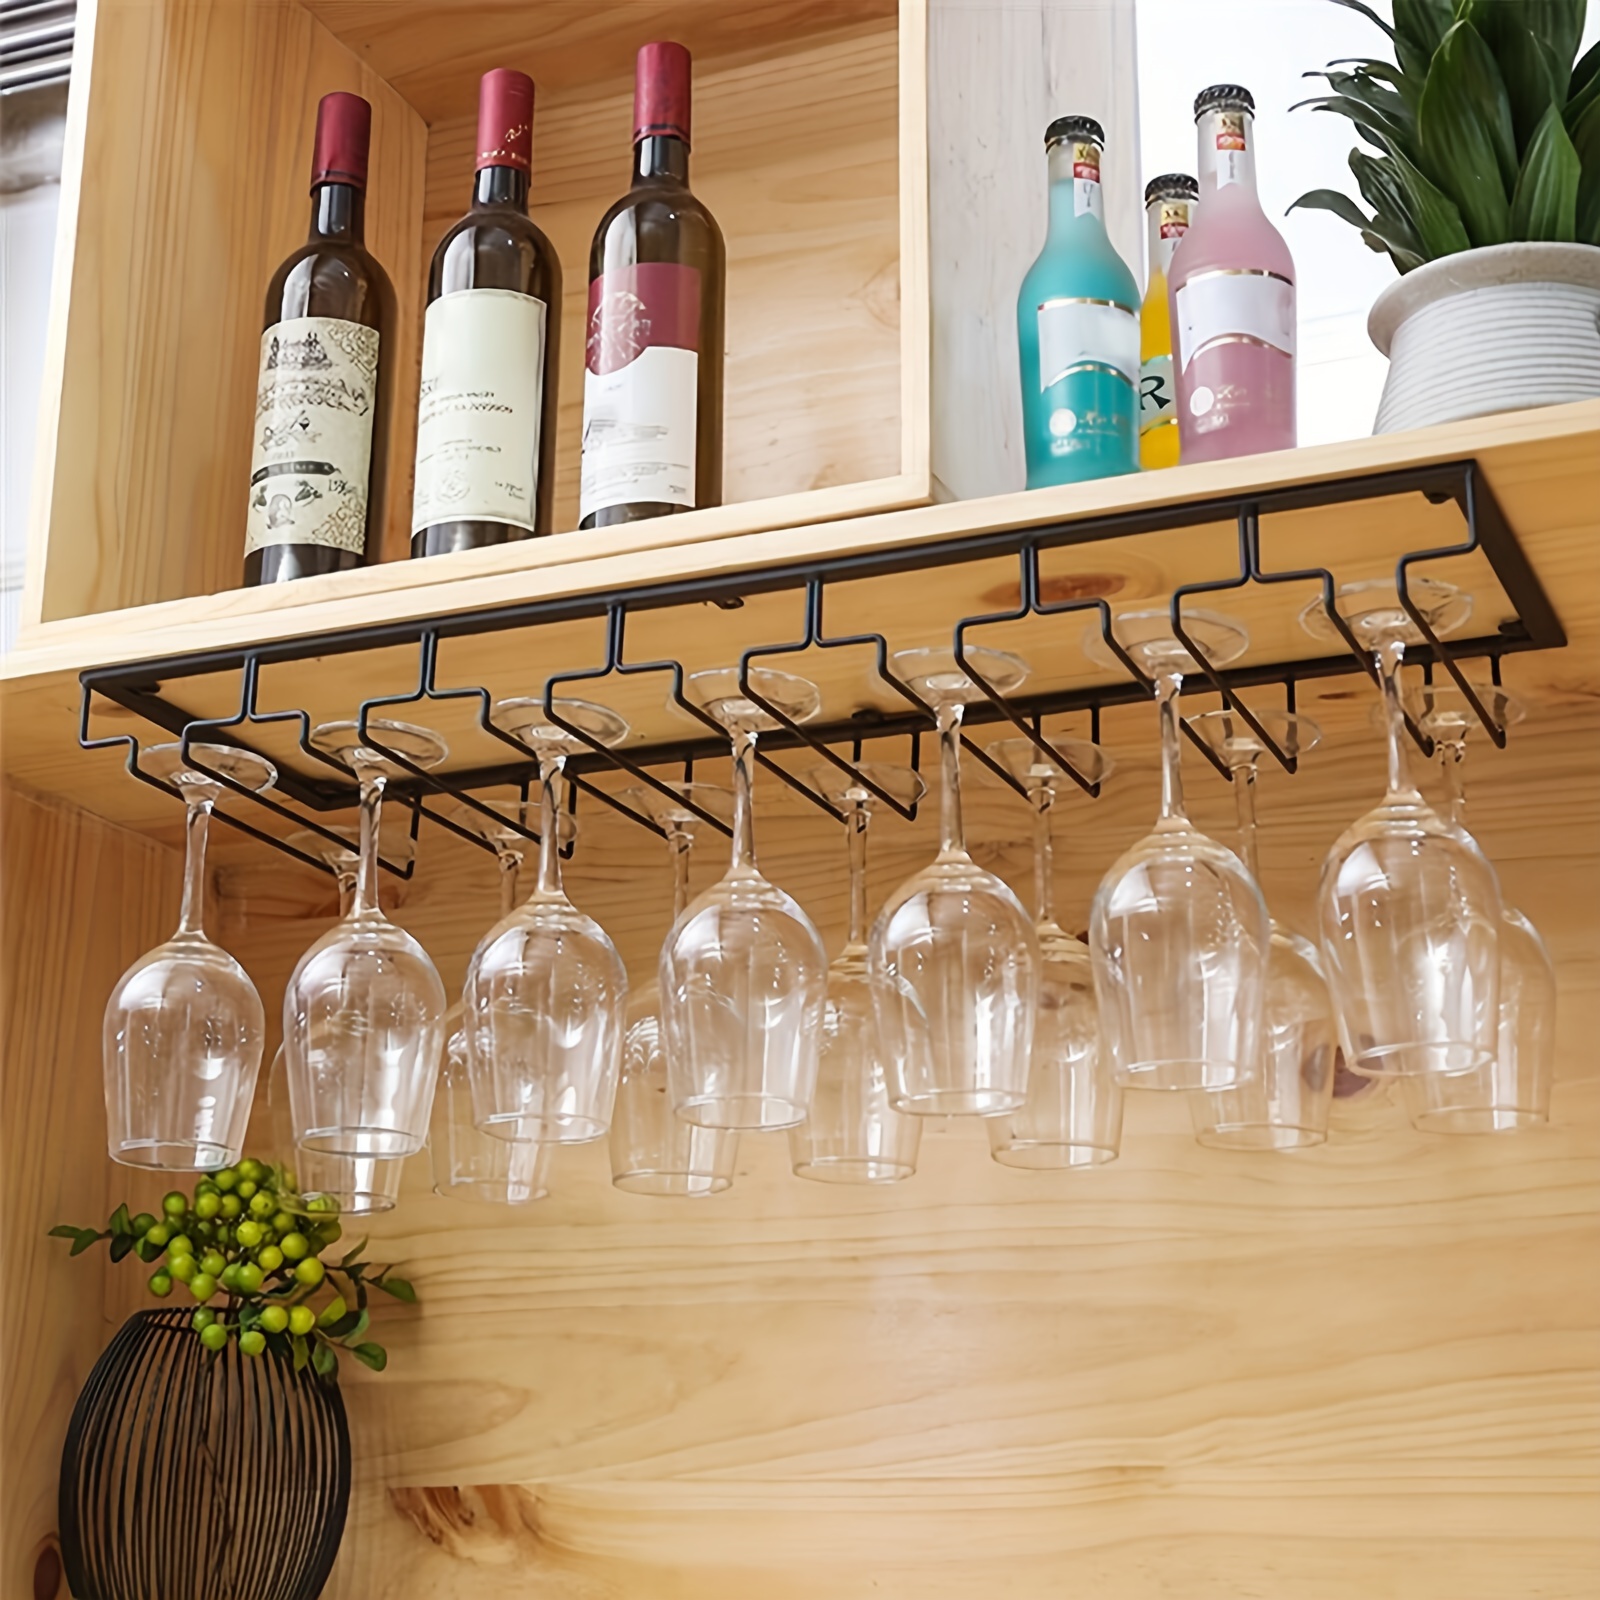 Estante para copas de vino debajo del gabinete, estante para copas